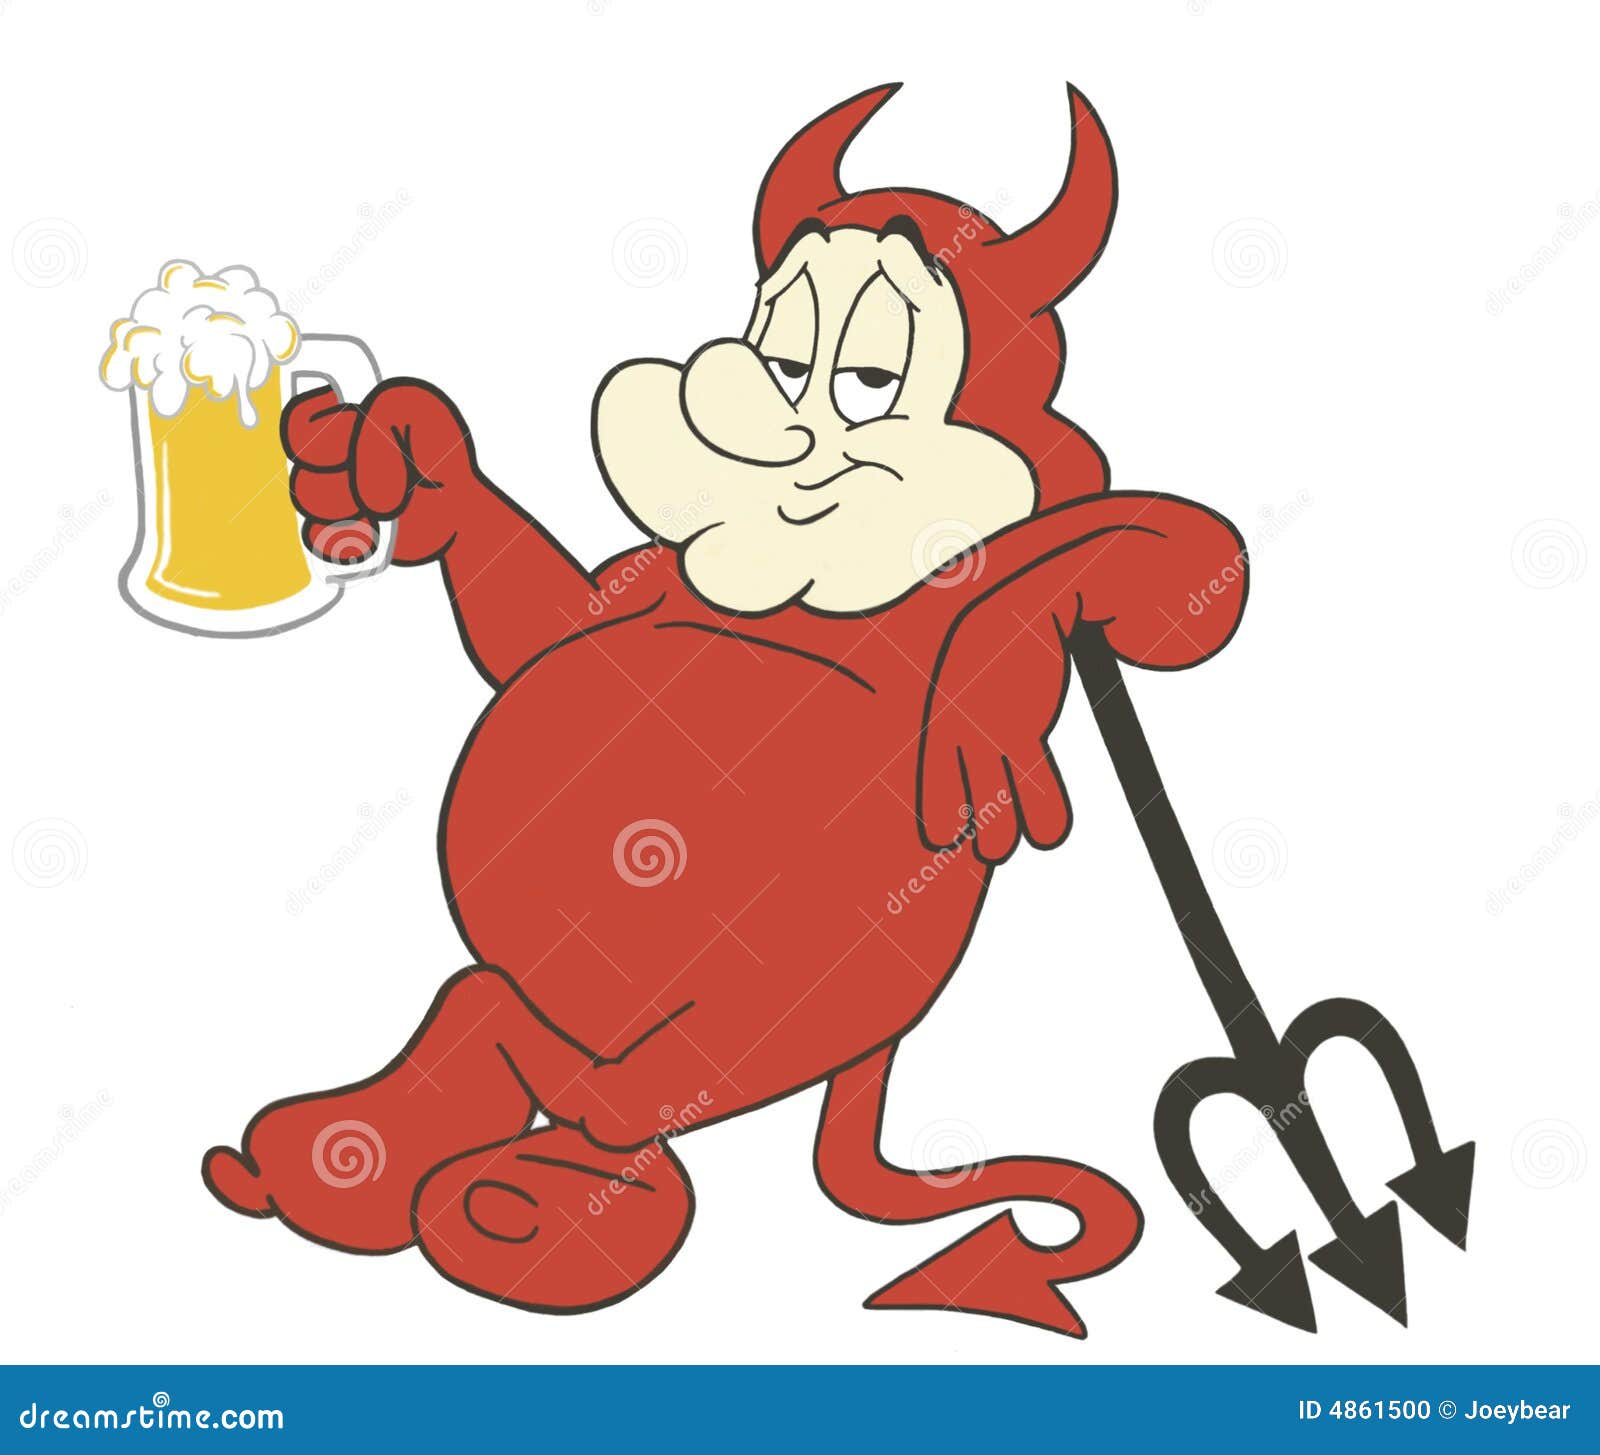 chubby-devil-beer-4861500.jpg